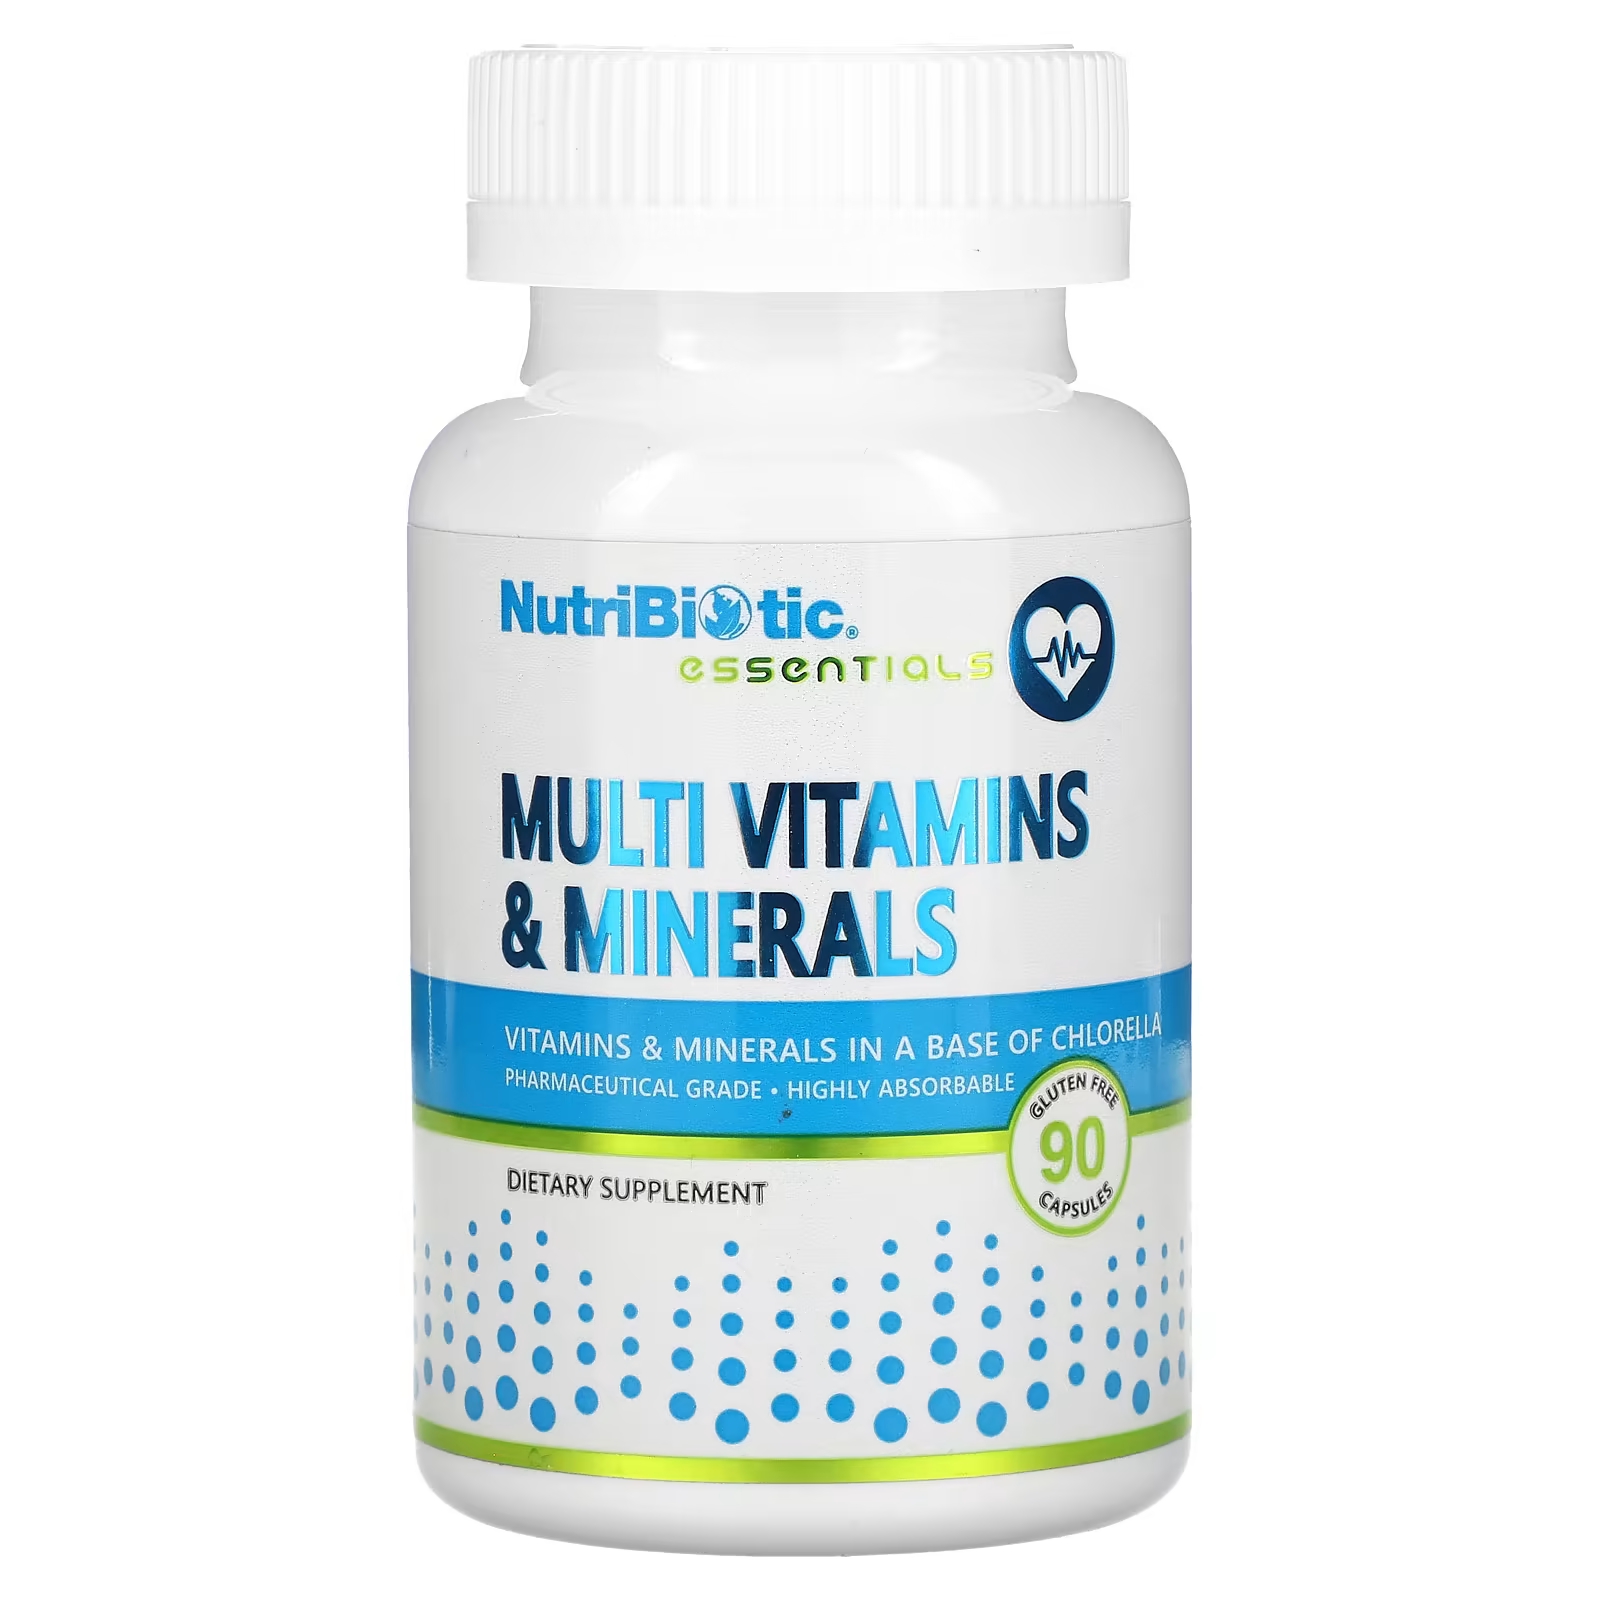 Пищевая добавка NutriBiotic мультивитамины и минералы, 90 капсул nutribiotic essentials мультивитамины и минералы 90 капсул без глютена